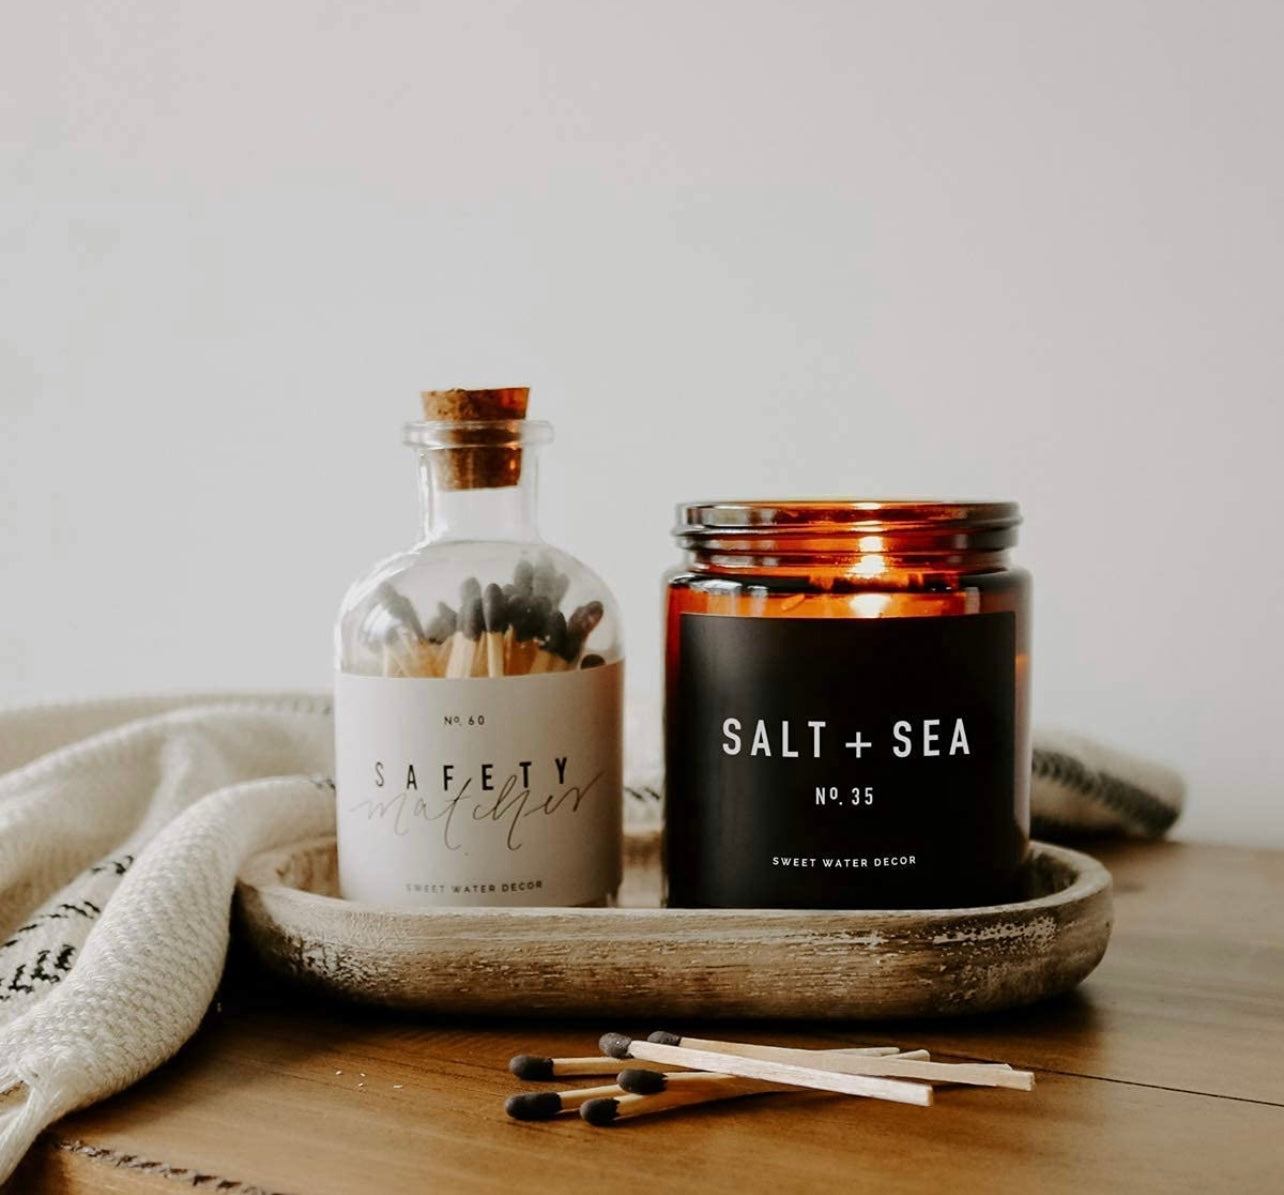 Salt & Sea Soy Candle-9oz